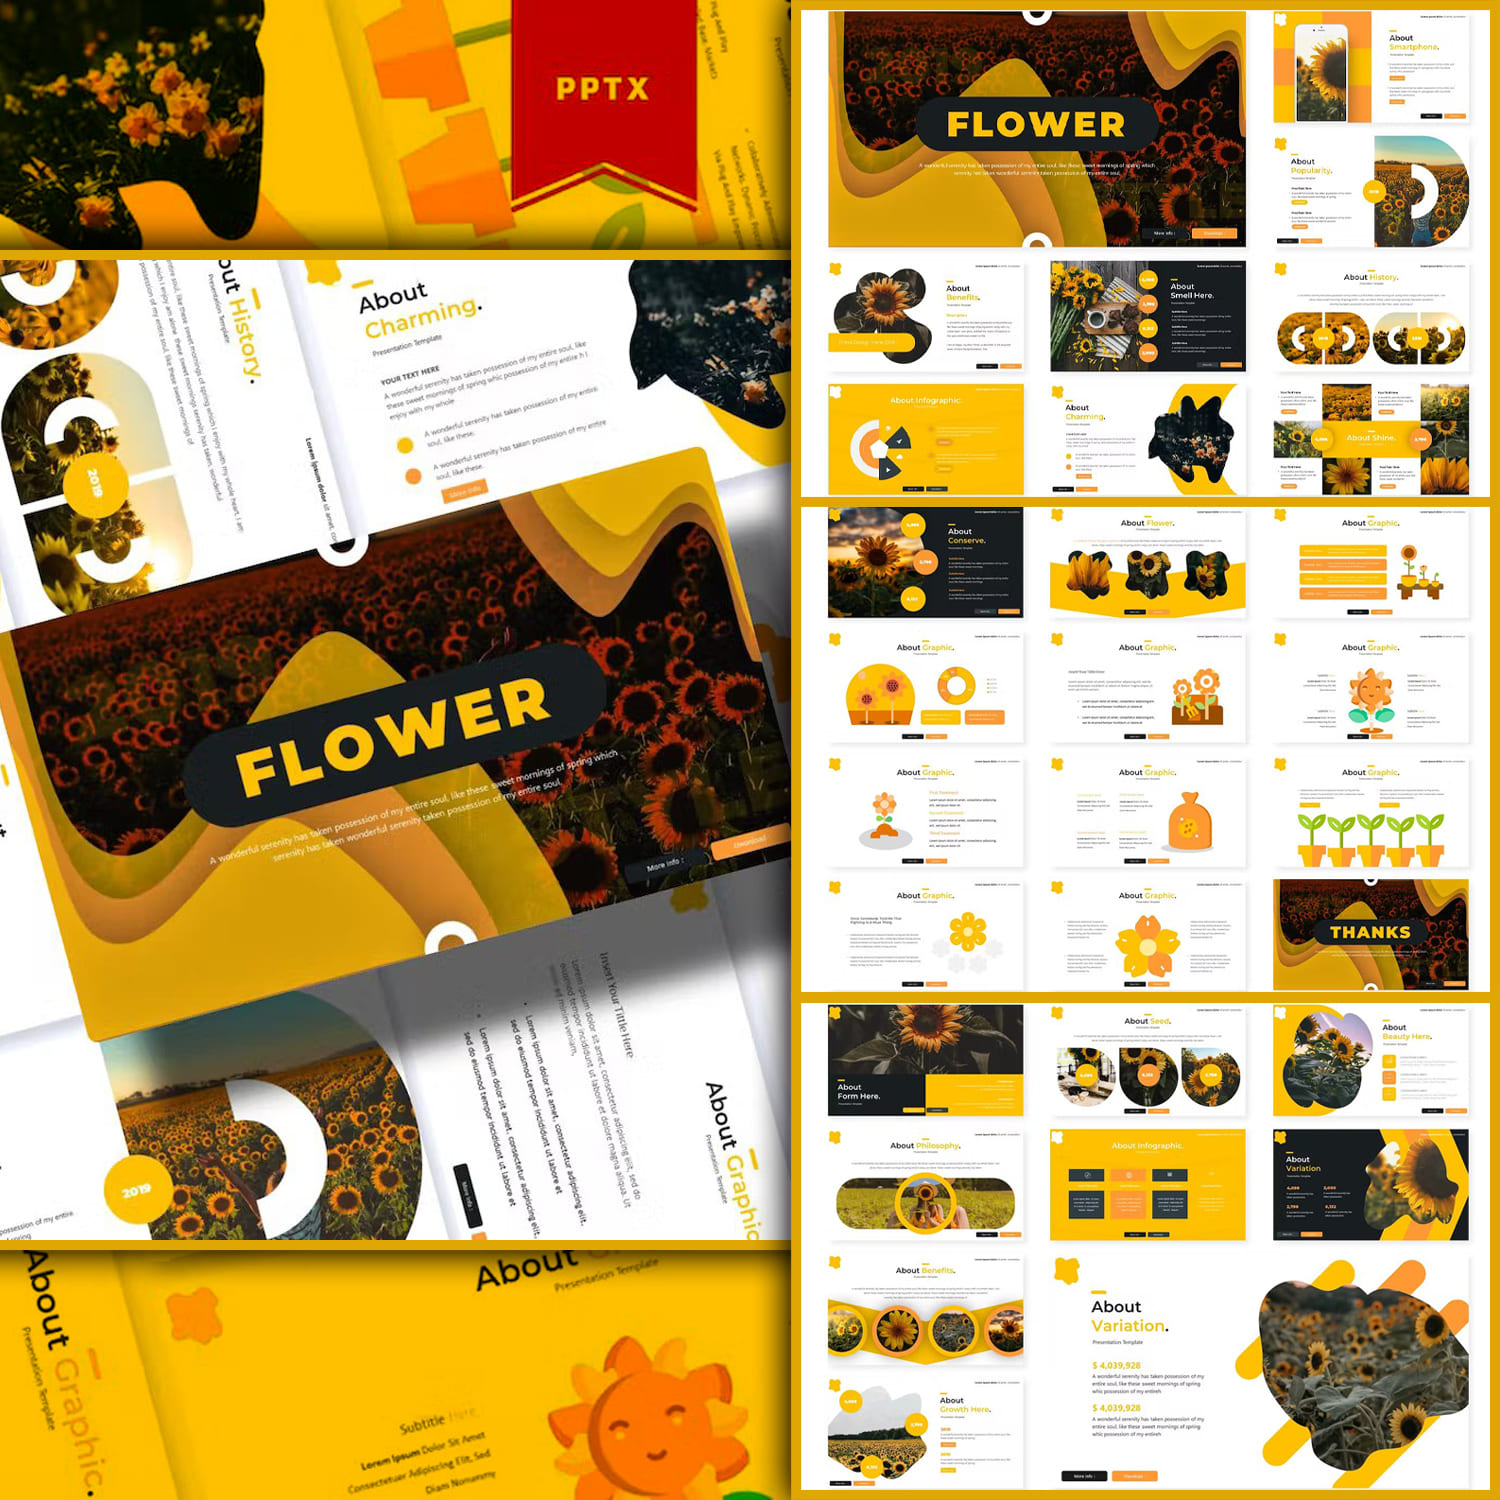 Flower | Powerpoint Template created by Vunira.